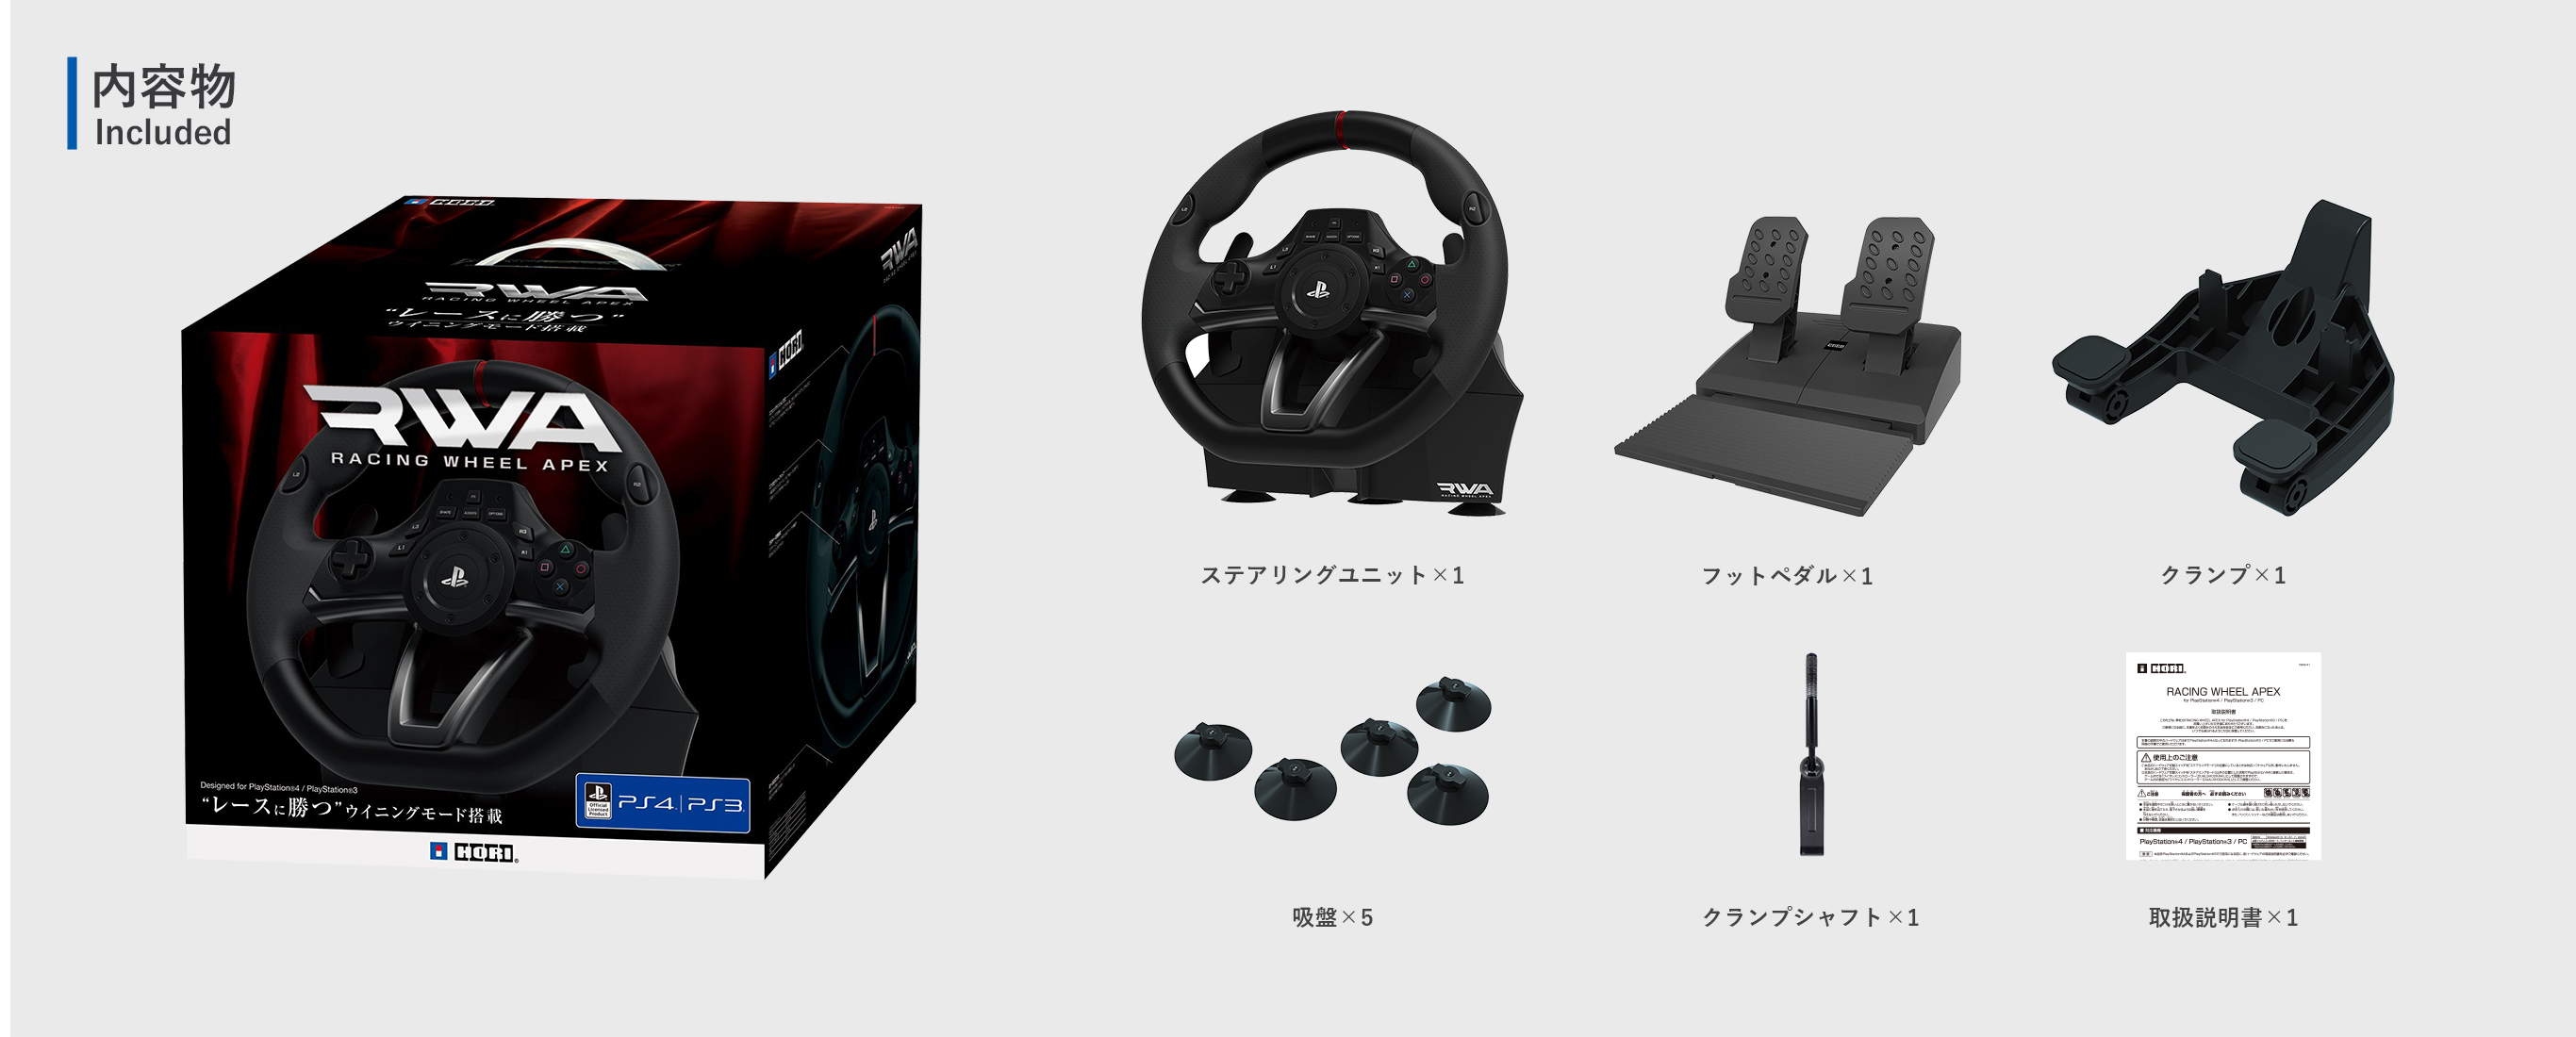 Racing Wheel Apex HORI PS4-052